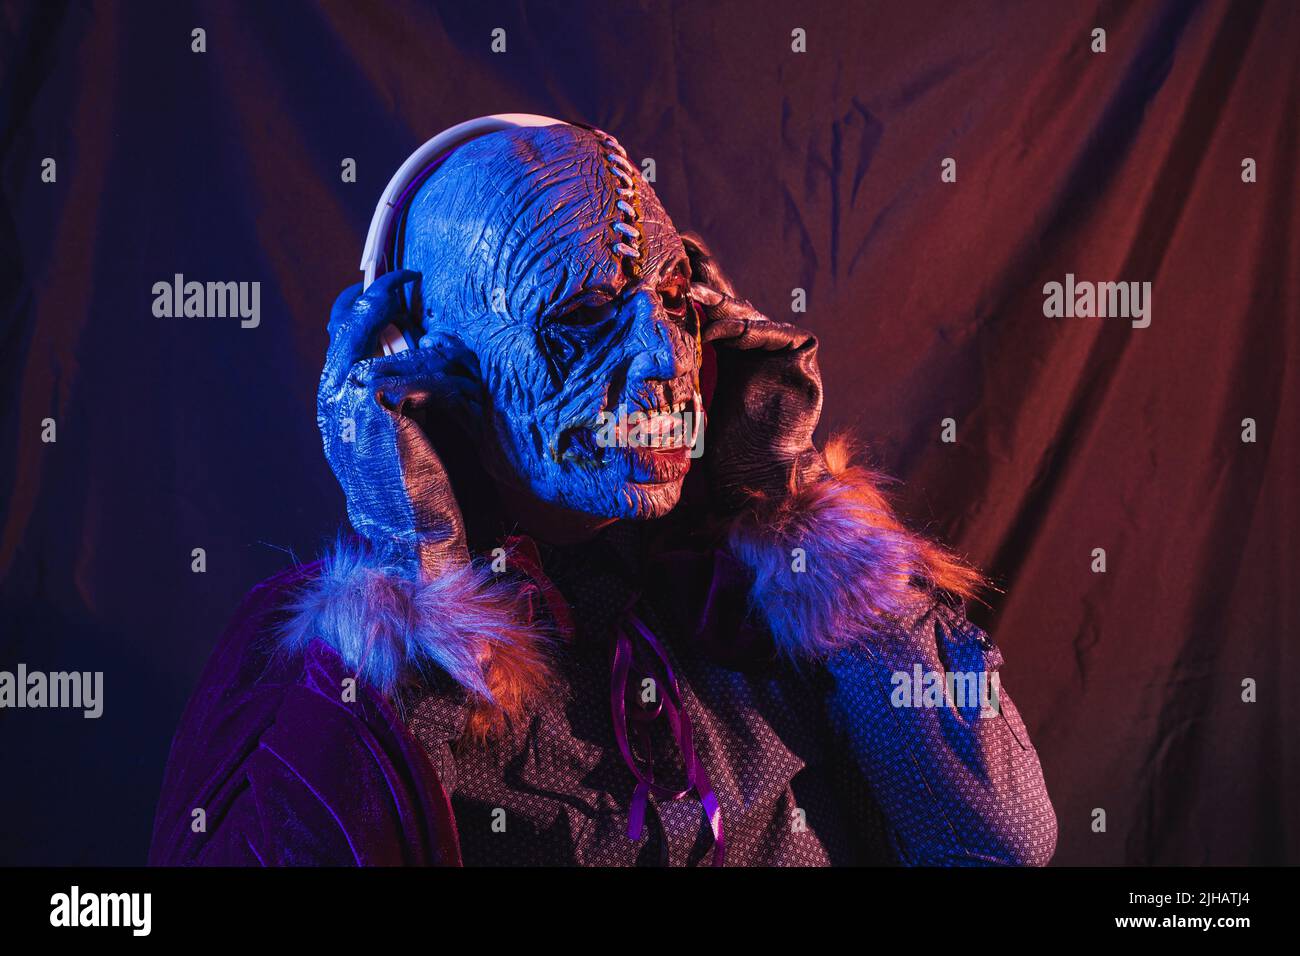 Ritratto di uno zombie vestito con una camicia e mantello ascoltando musica con cuffie wireless. La scena è scura, illuminata da luci blu e arancioni Foto Stock